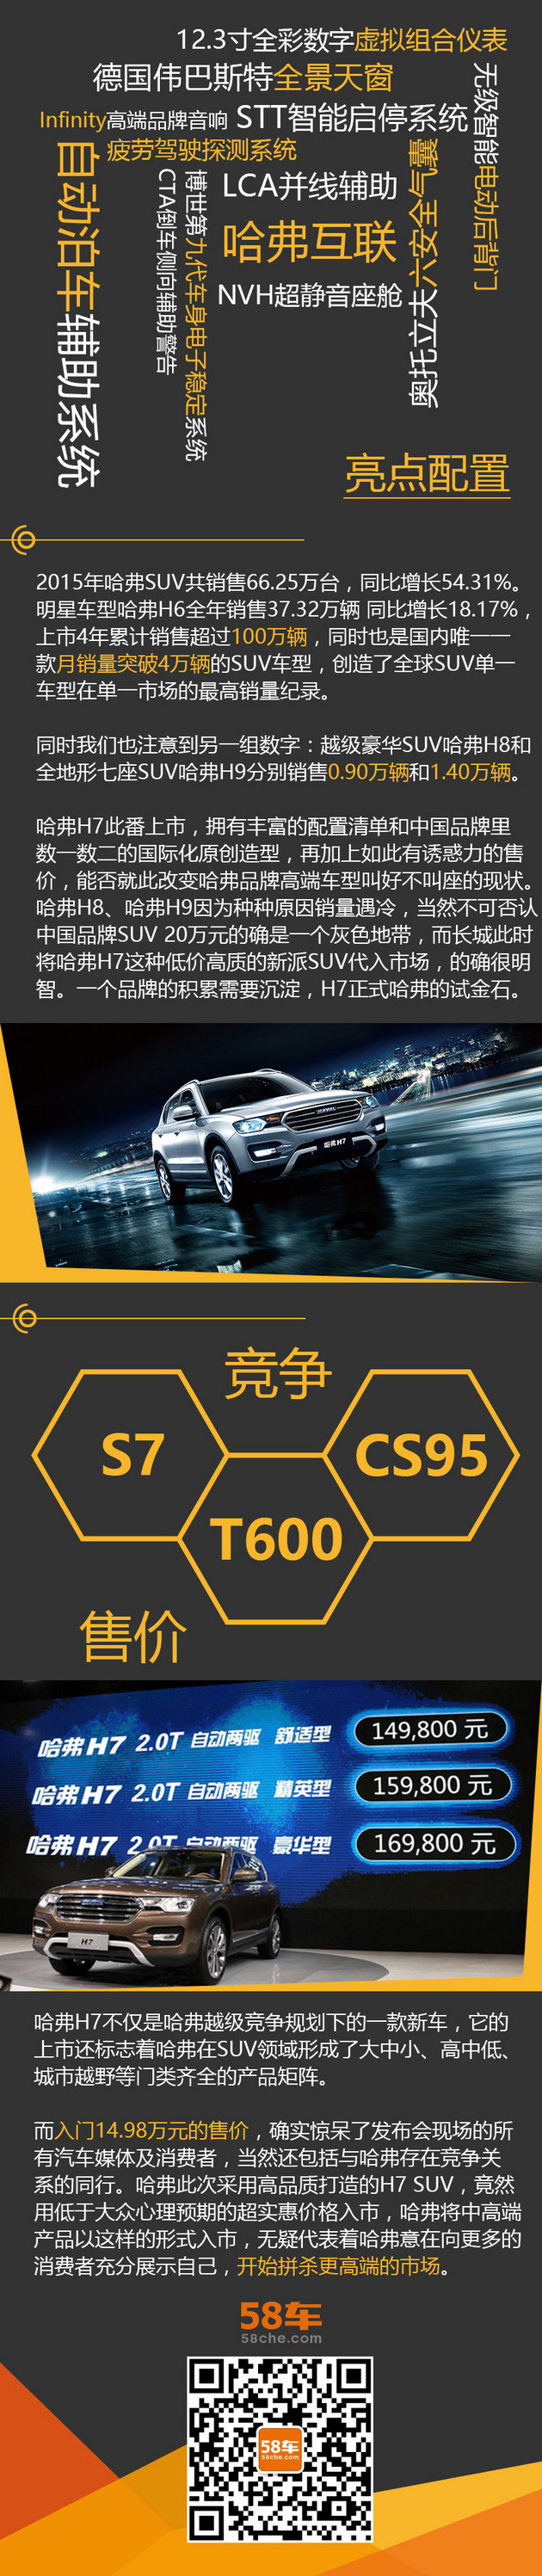 2016北京车展 哈弗H7买得起的高品质SUV